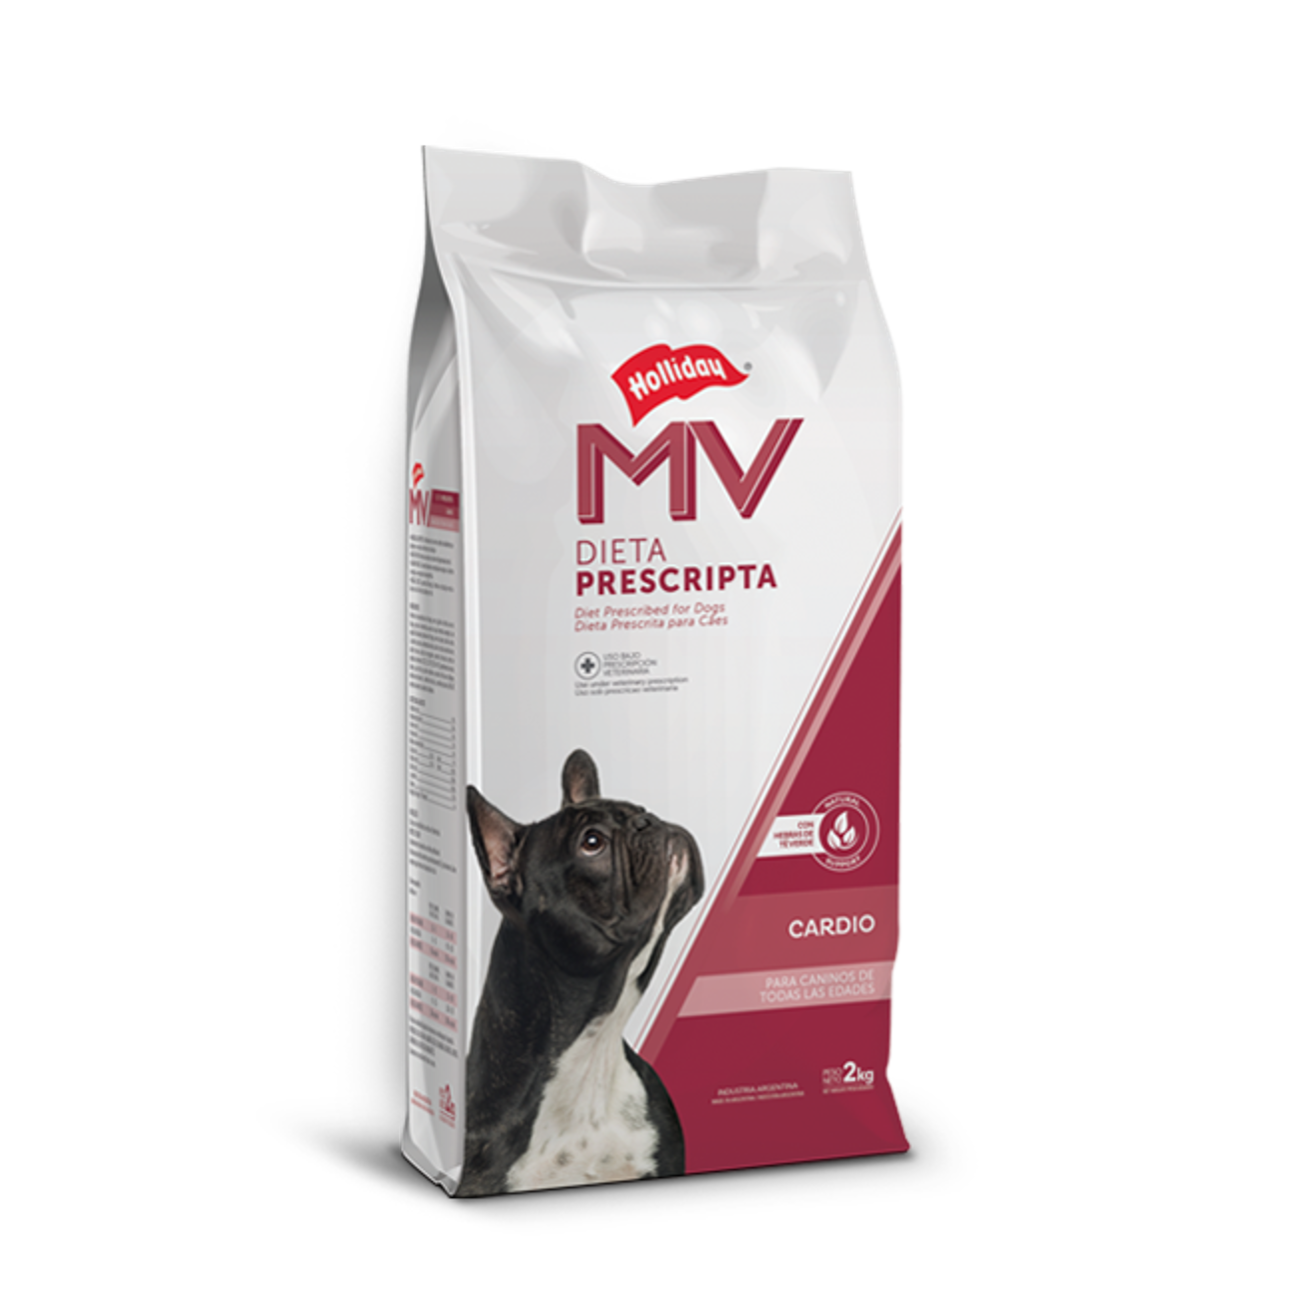 Holliday MV Cardio para Perros - Alimento para Perros